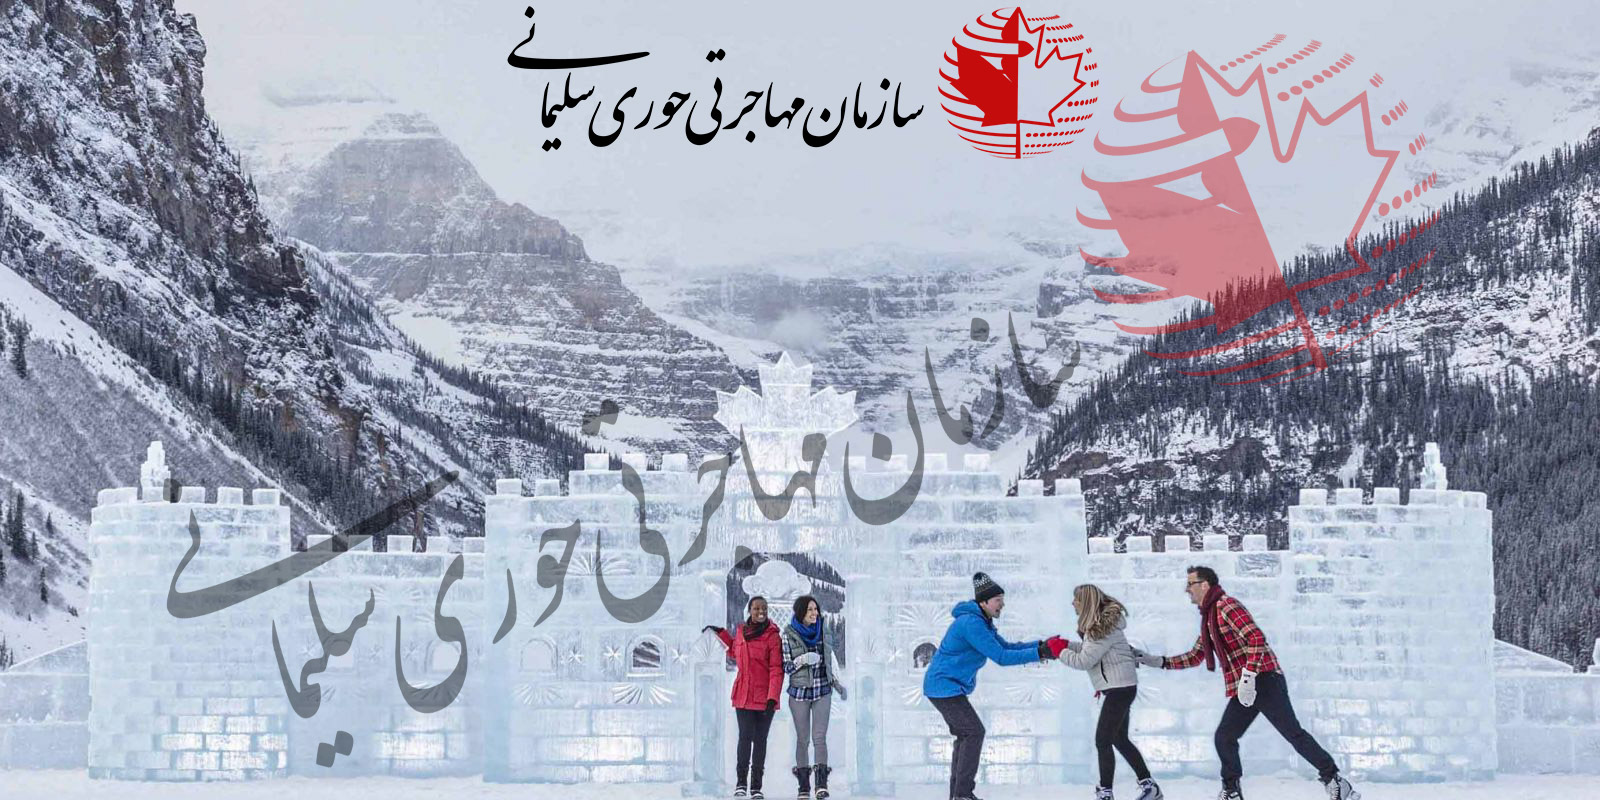 جشنواره زمستانی در بنف